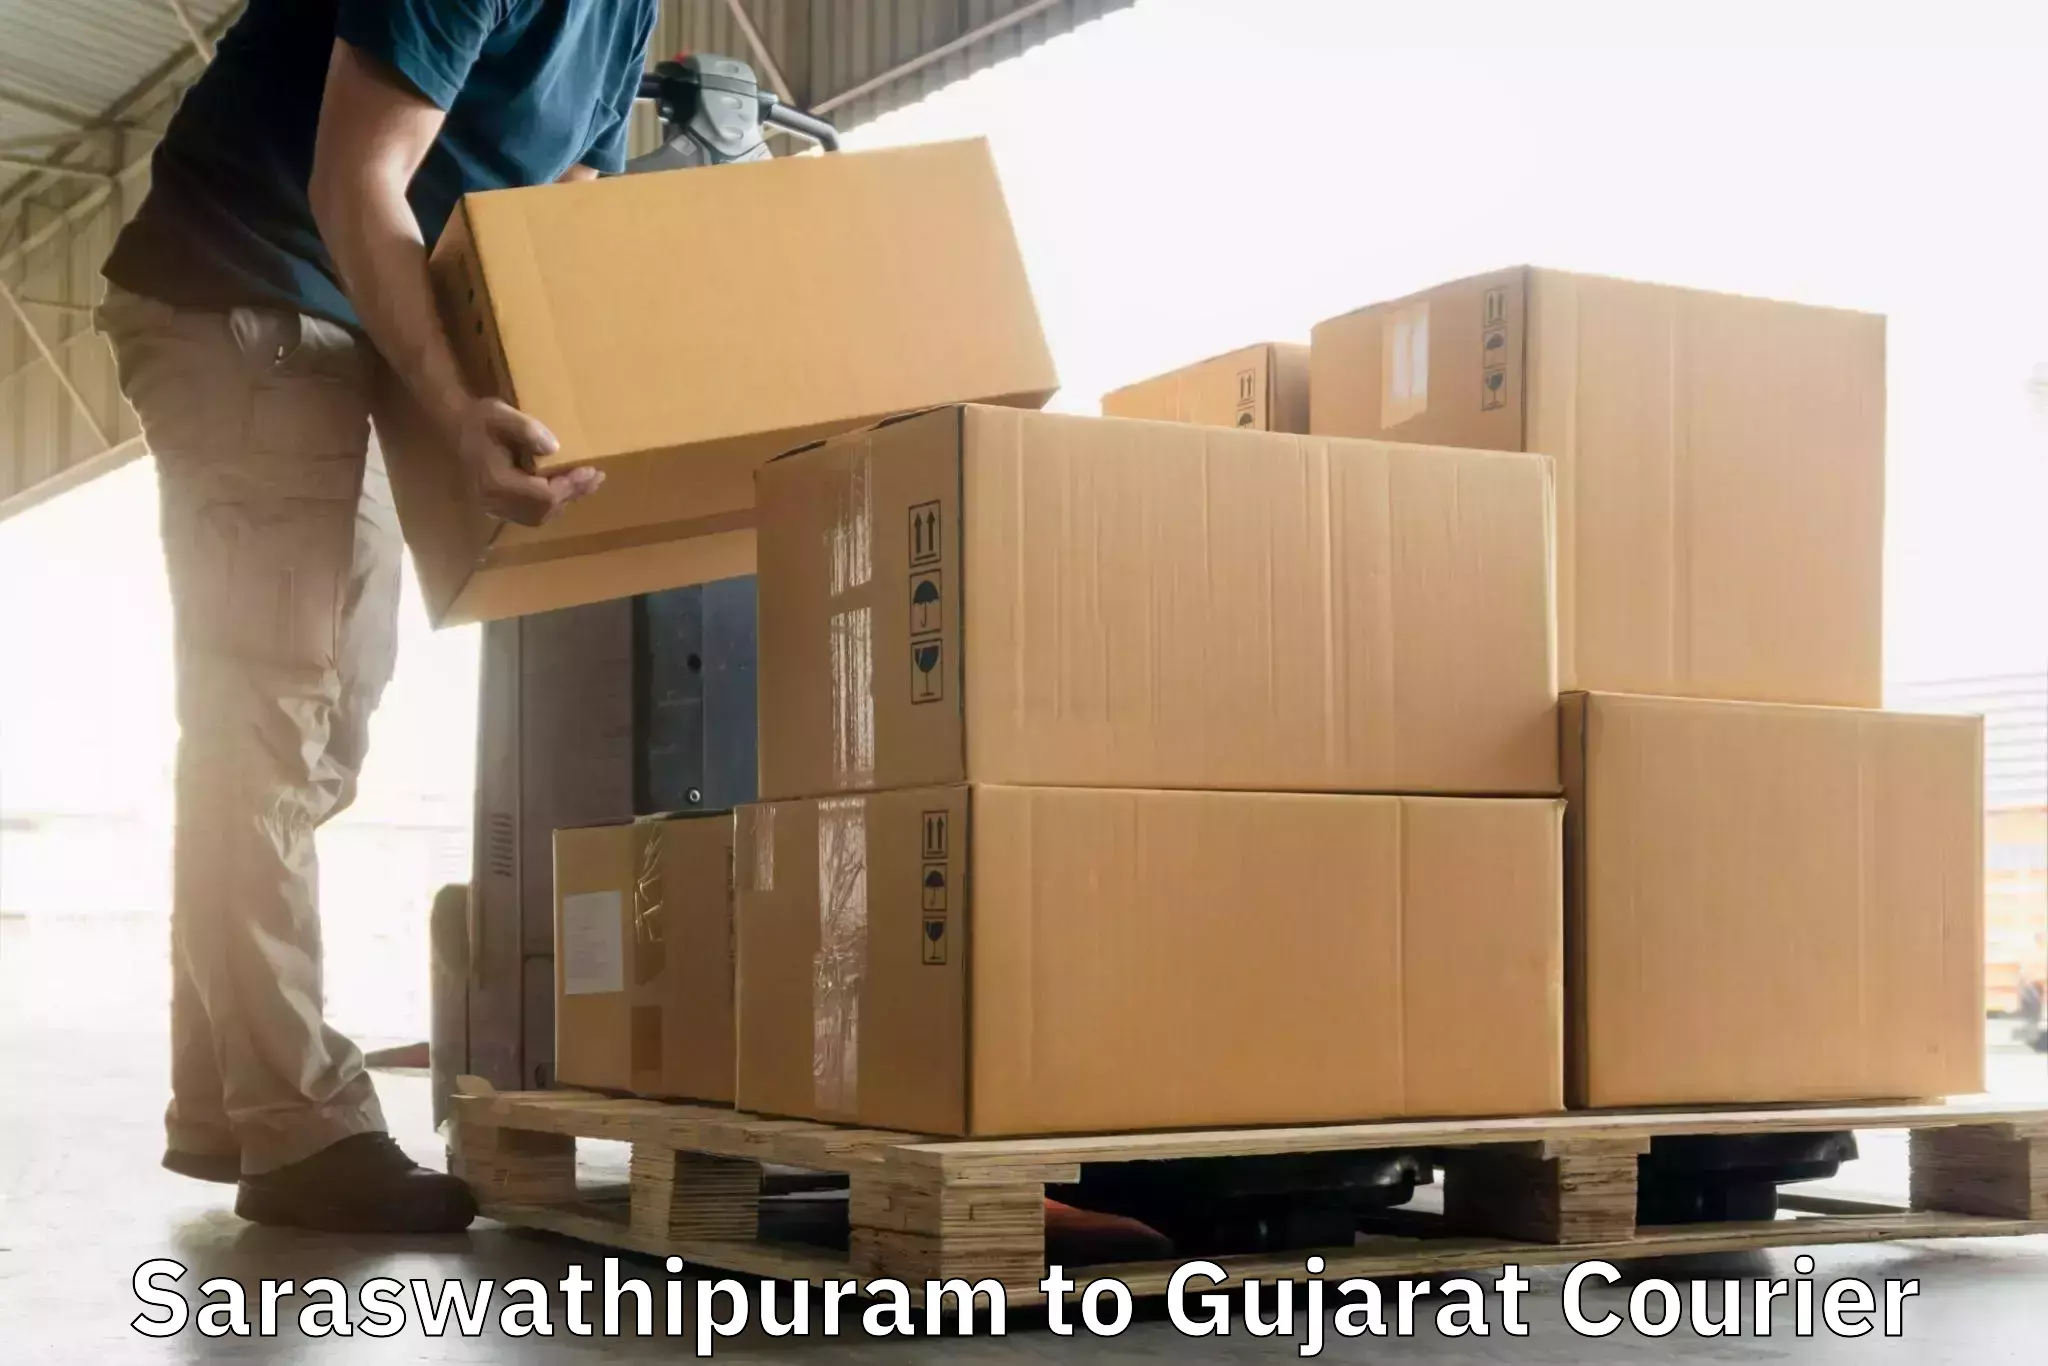 High-speed parcel service Saraswathipuram to Mahesana